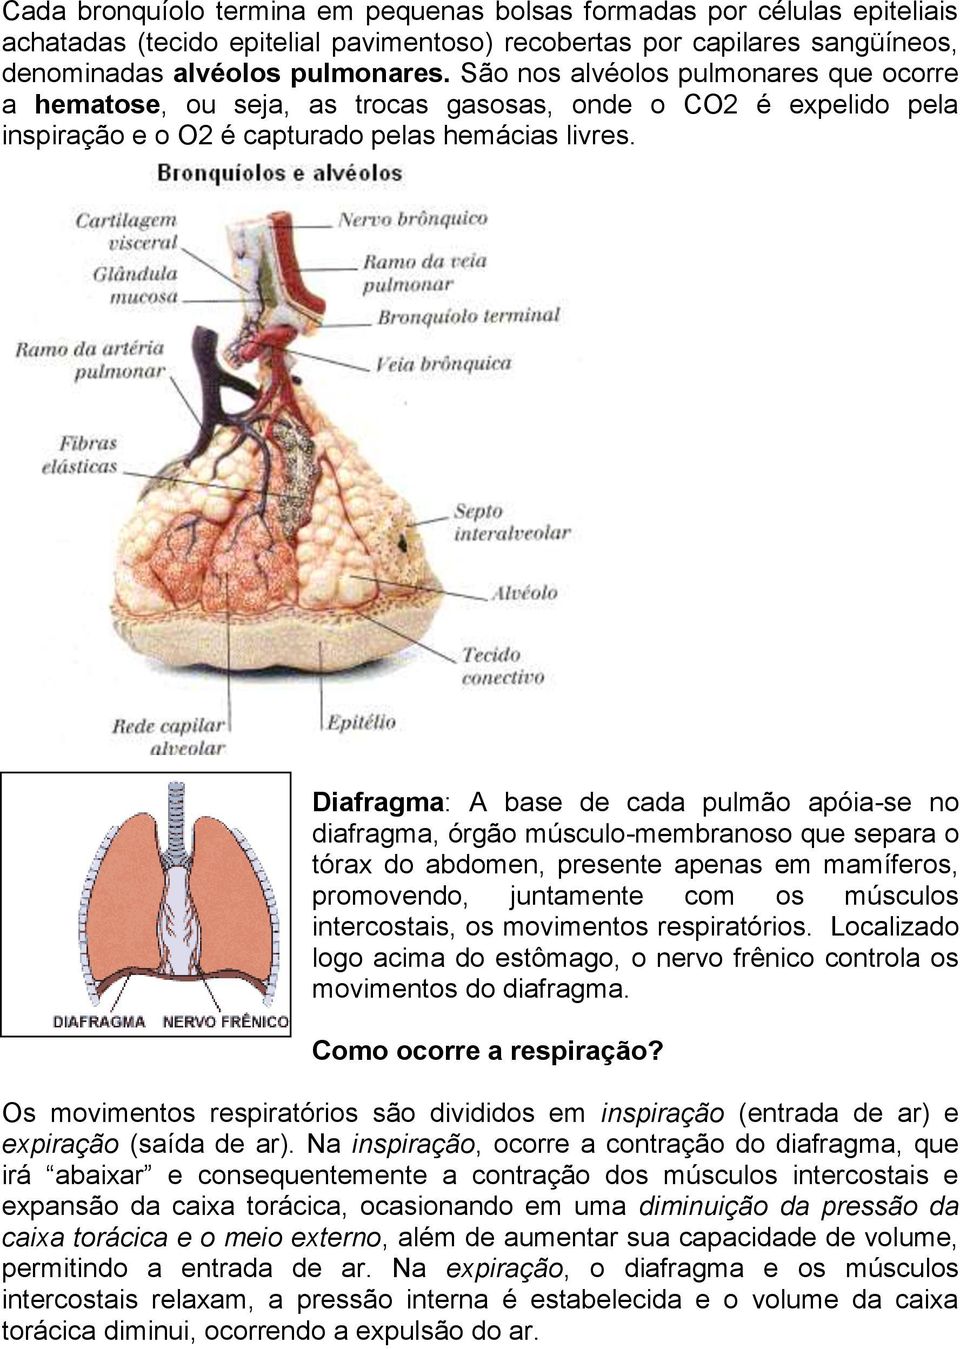 Diafragma: A base de cada pulmão apóia-se no diafragma, órgão músculo-membranoso que separa o tórax do abdomen, presente apenas em mamíferos, promovendo, juntamente com os músculos intercostais, os